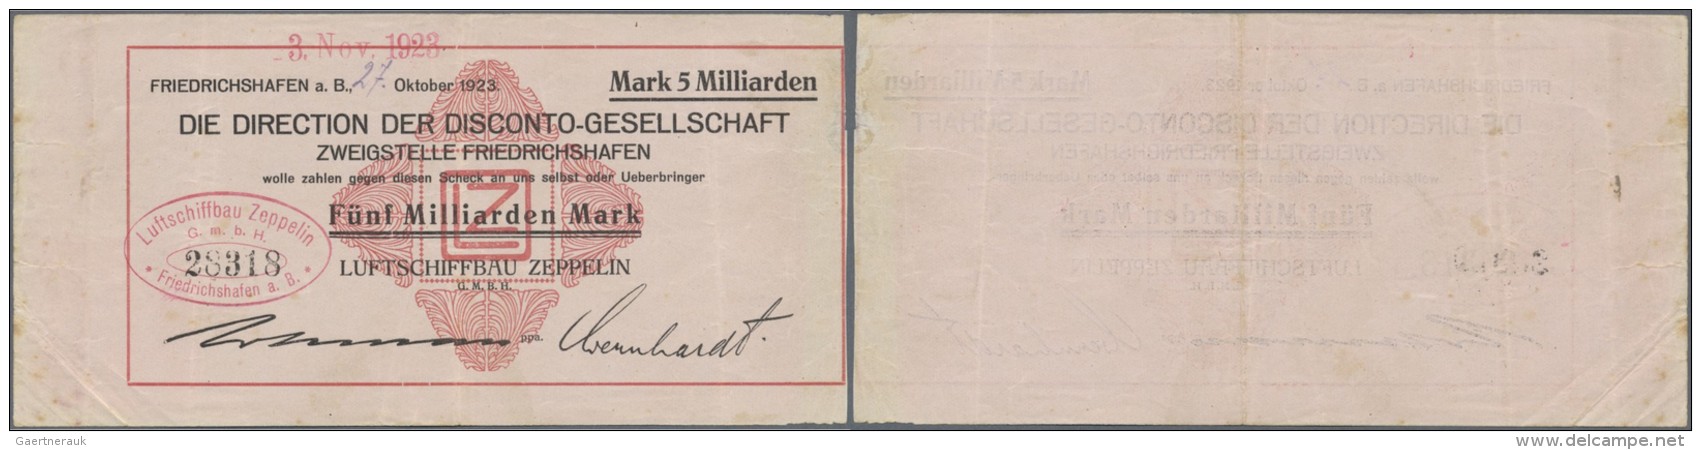 Deutschland - Notgeld - W&uuml;rttemberg: Friedrichshafen, Luftschiffbau Zeppelin GmbH, 5 Mrd. Mark, 3.11.1923, Datum Ge - Lokale Ausgaben